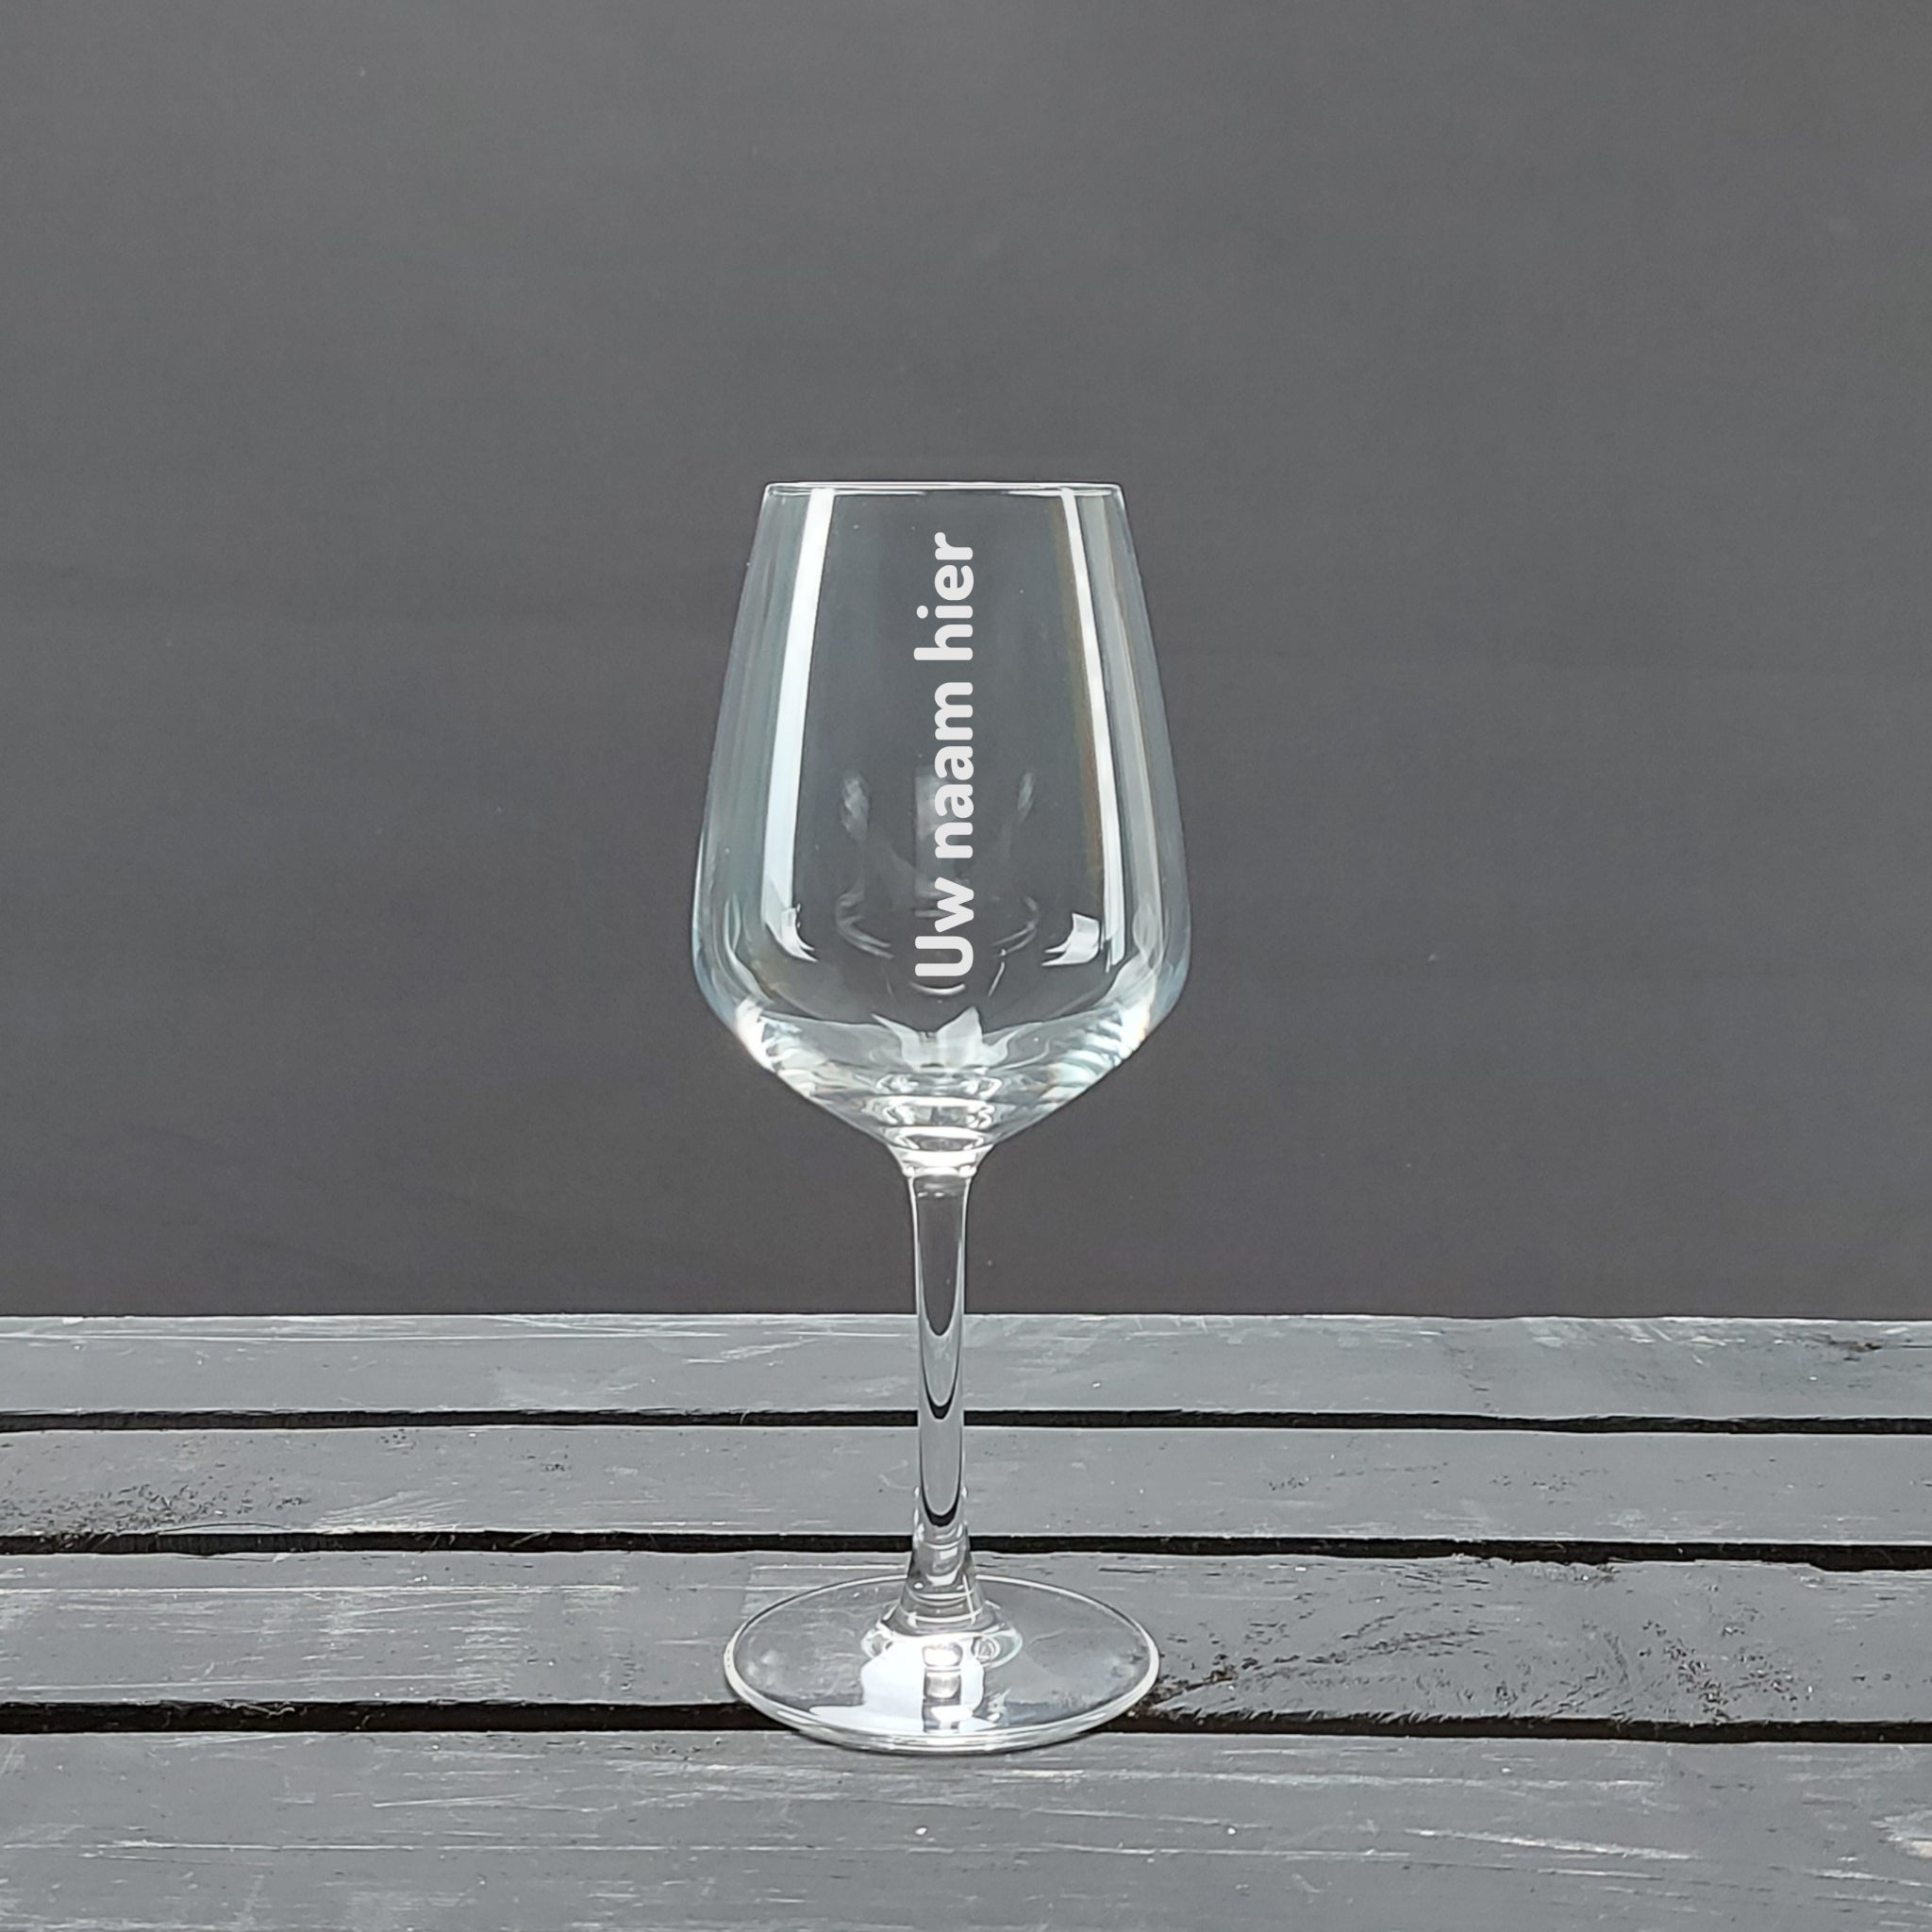 Wijnglas met tekst gegraveerd. Gepersonaliseerd wijnglas. witte wijnglas, rode wijnglas, rose wijnglas. Wijnglas met naam.